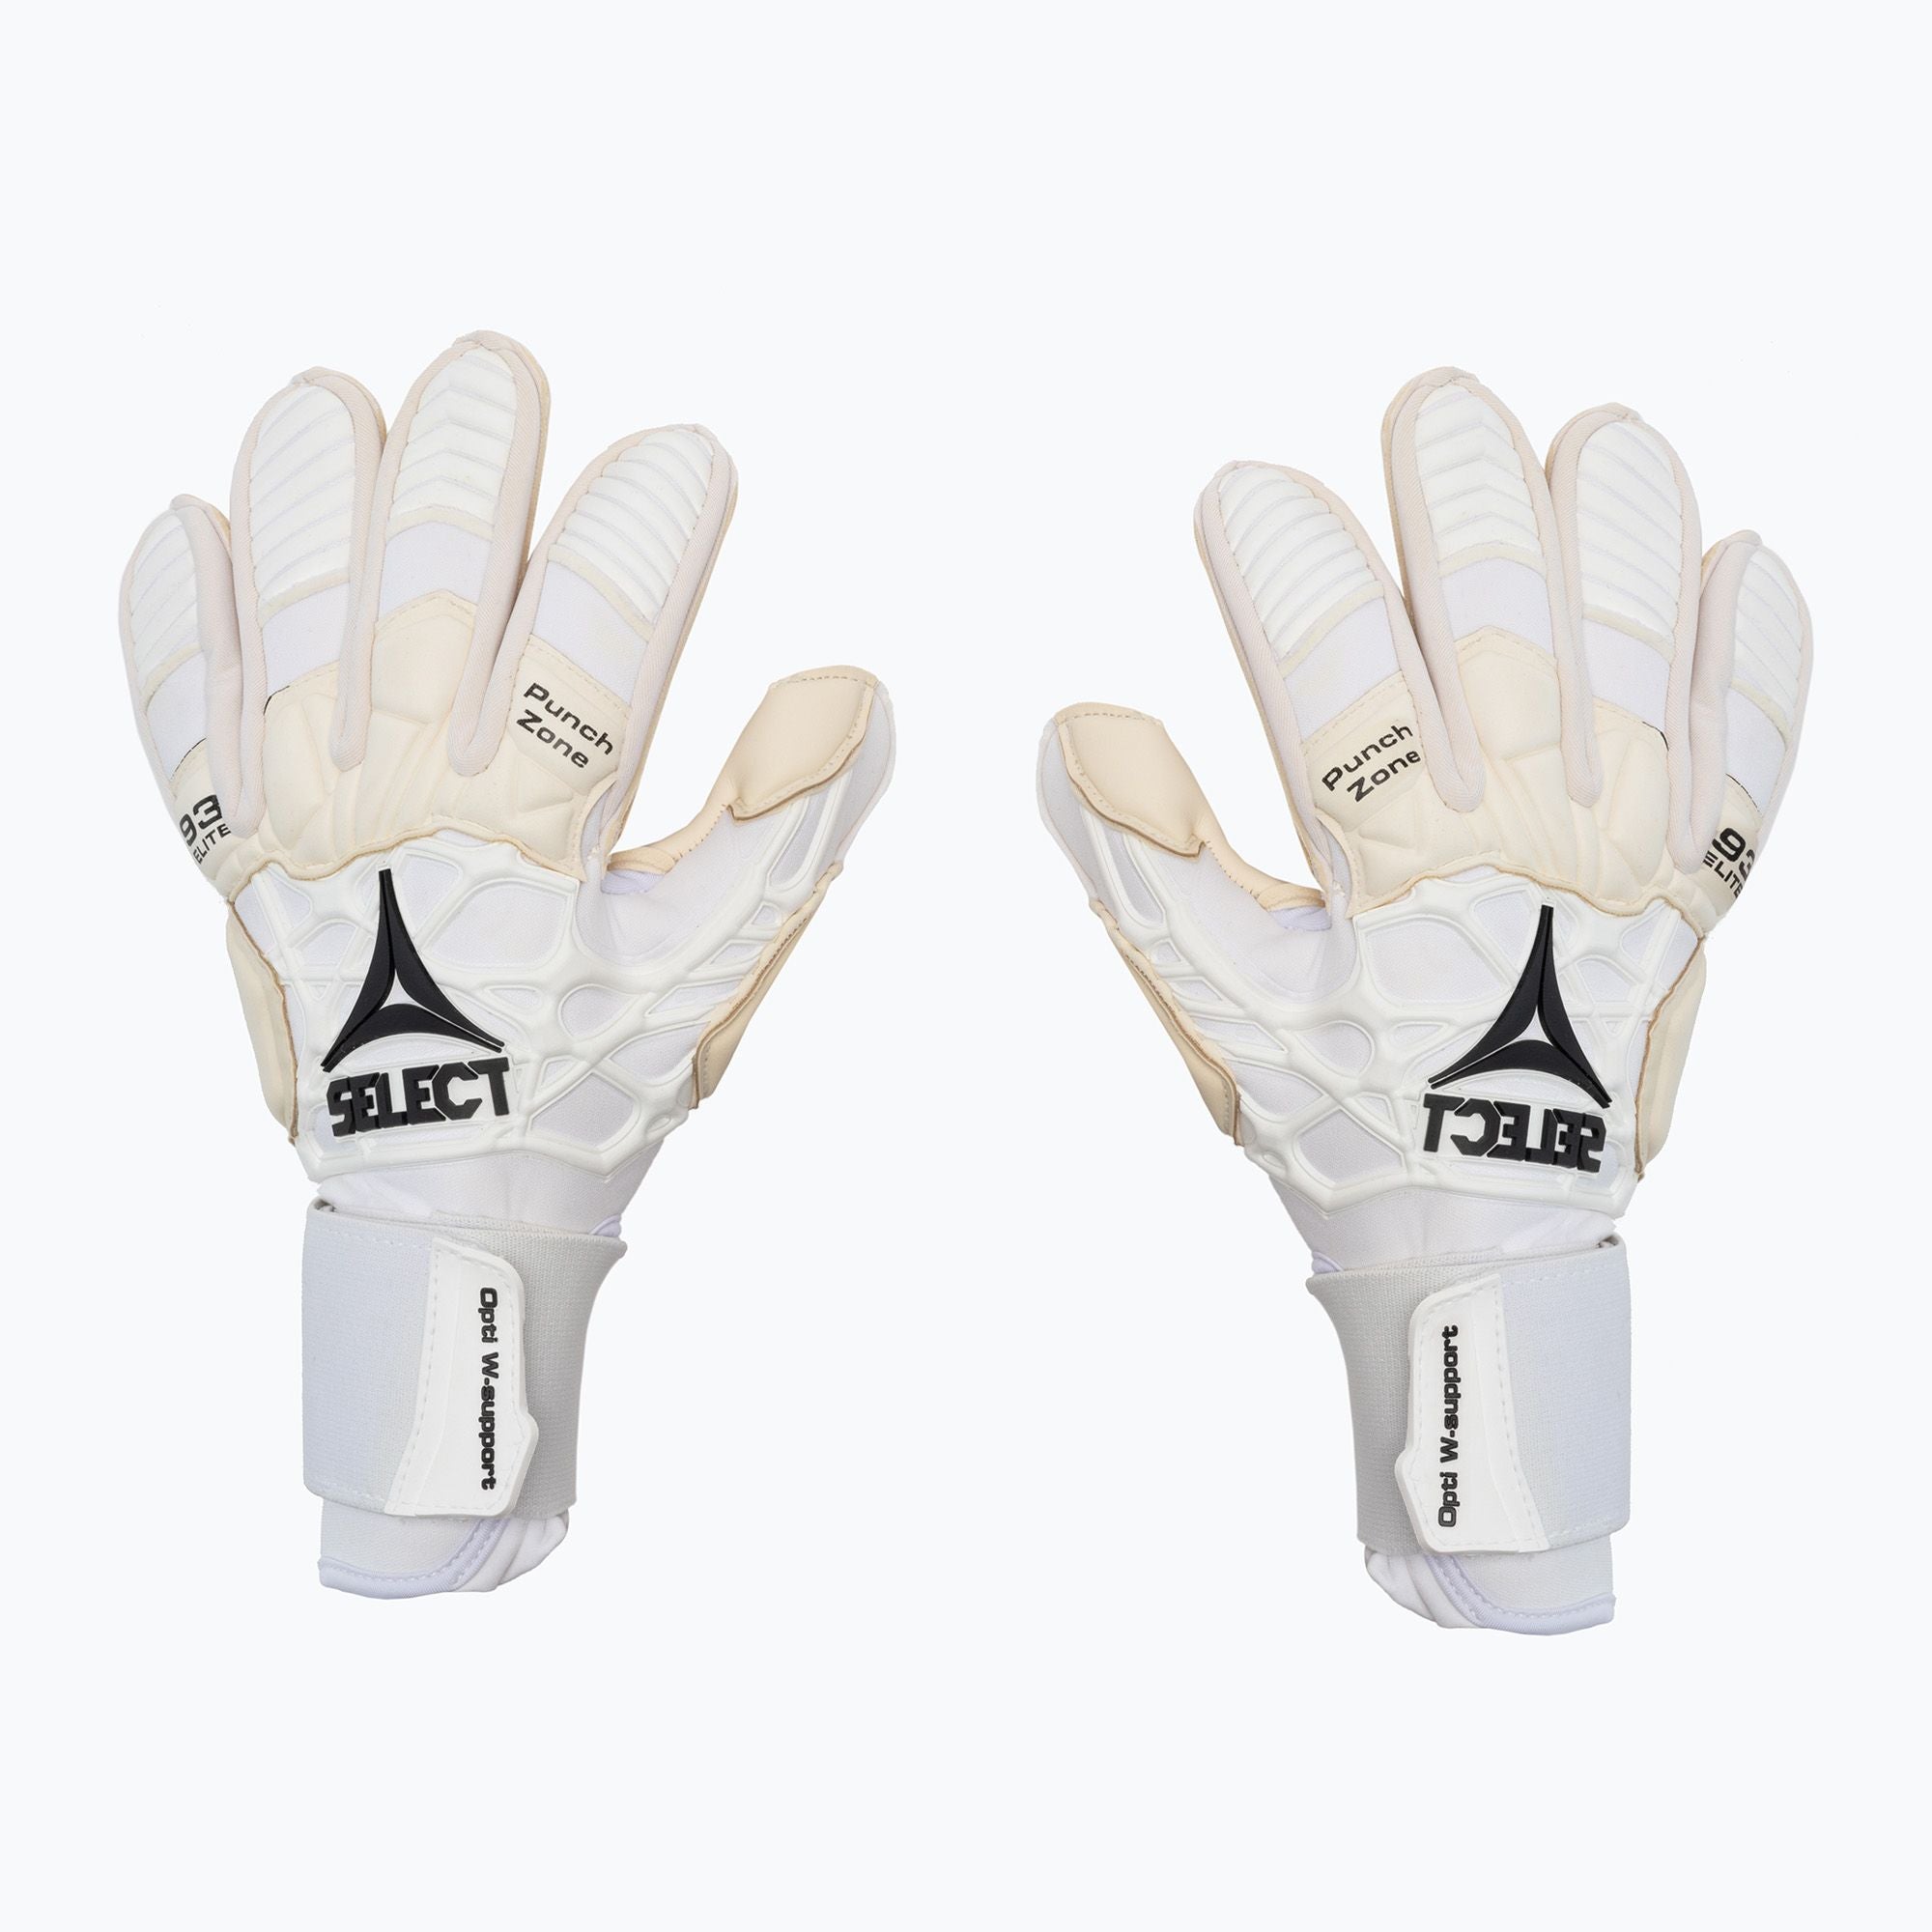 Select 93 Elite Pro Goalkeeper Glove White